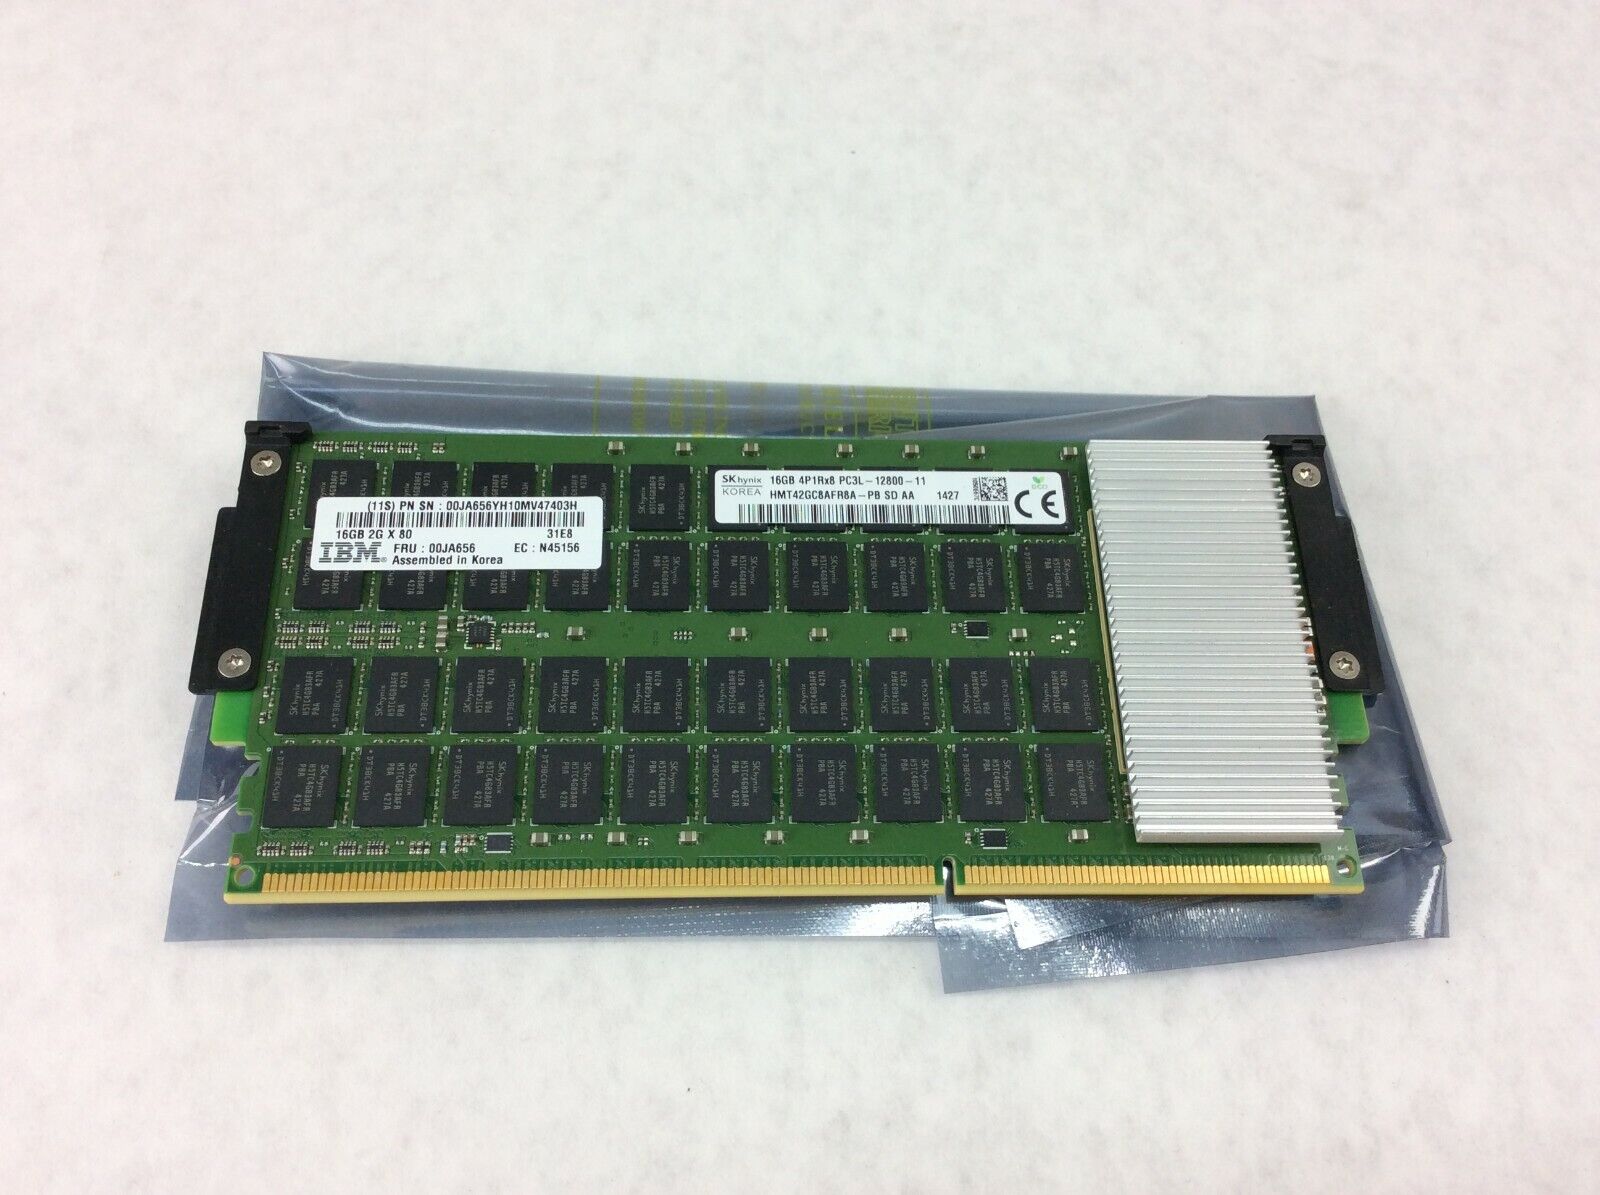 IBM 00JA656 16GB 2Gx80 SK Kynix 4P1Rx8 PC3L-12800 Memory